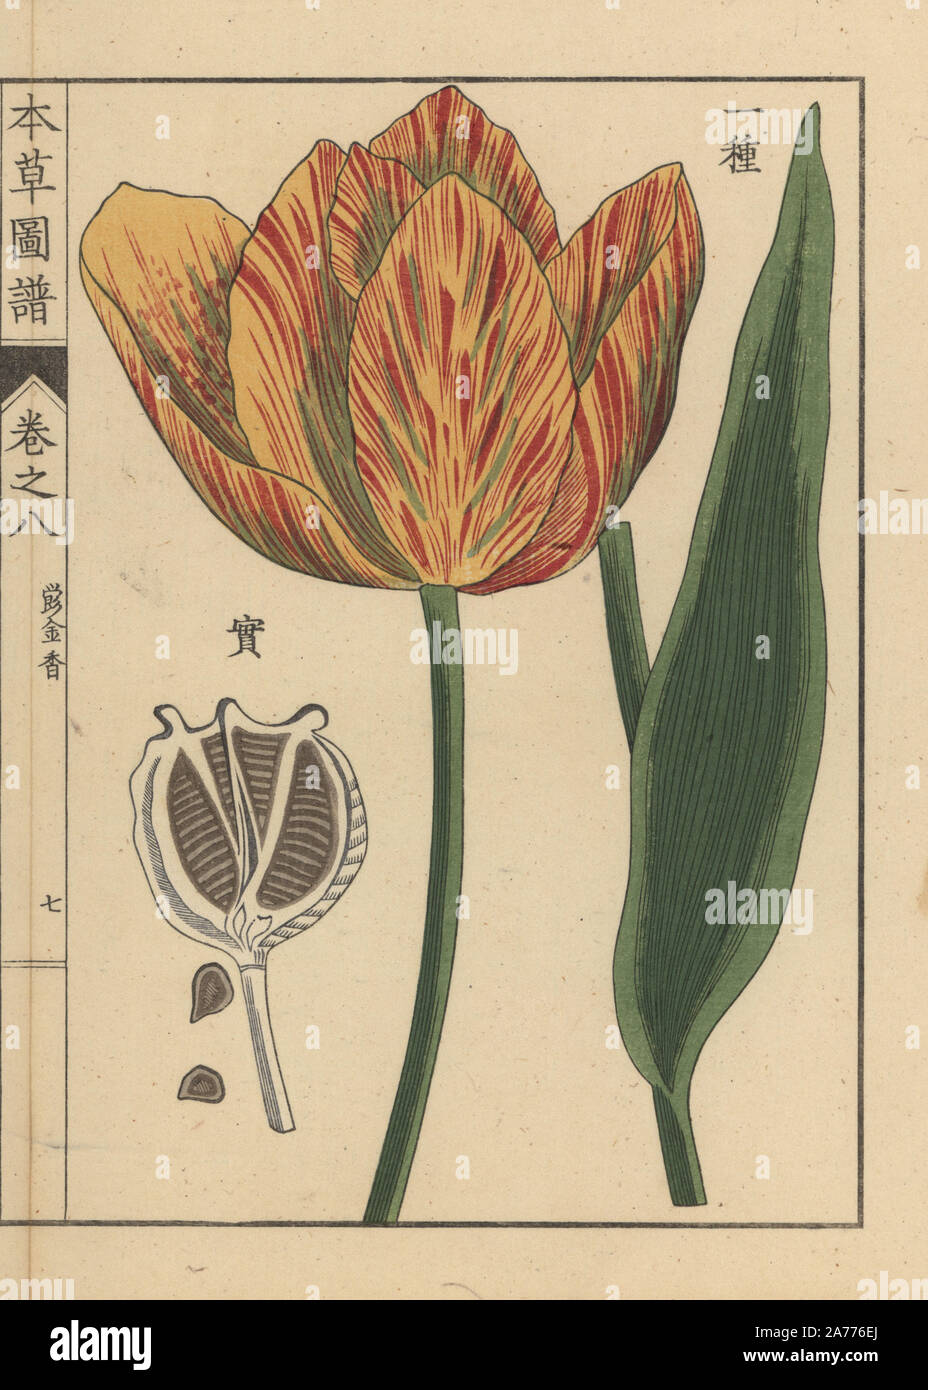 Tulip, Tulipa L. gesneria stampato a colori woodblock incisione di Kan'en Iwasaki da 'Honzo Zufu", una guida illustrata per piante medicinali, Giappone, 1884. La Iwasaki (1786-1842) era un giapponese botanico, entomologo e zoologo. Egli è stato uno dei primi botanici giapponesi per incorporare la conoscenza occidentale nei suoi studi. Foto Stock